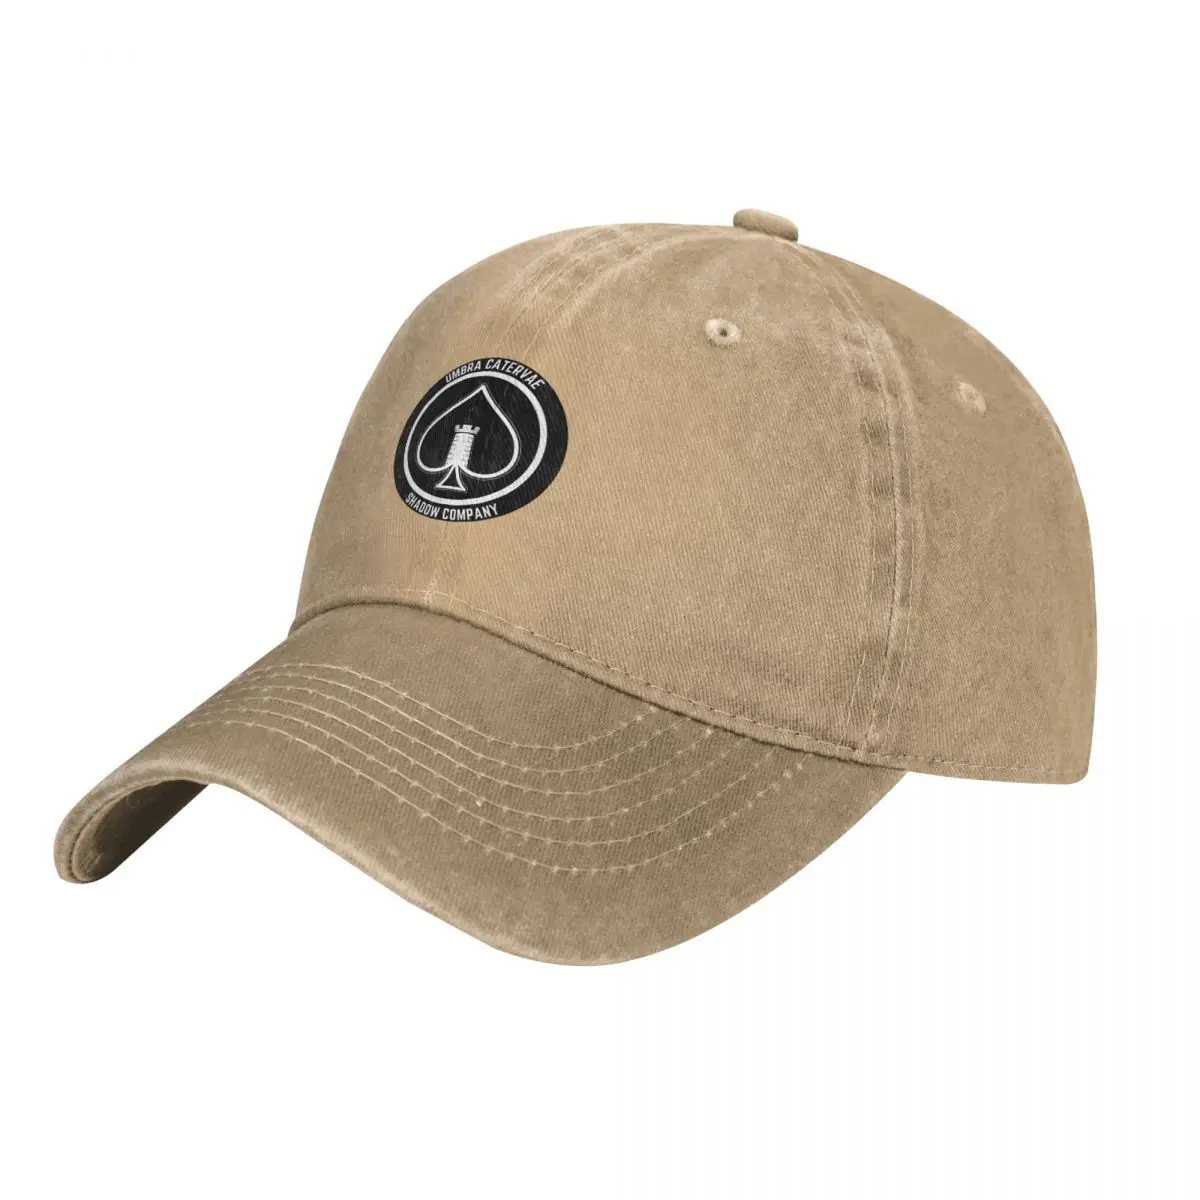 Shadow Company Emblem Cap Cowboy Hat bucket hat Sun cap military tactica... - £17.34 GBP